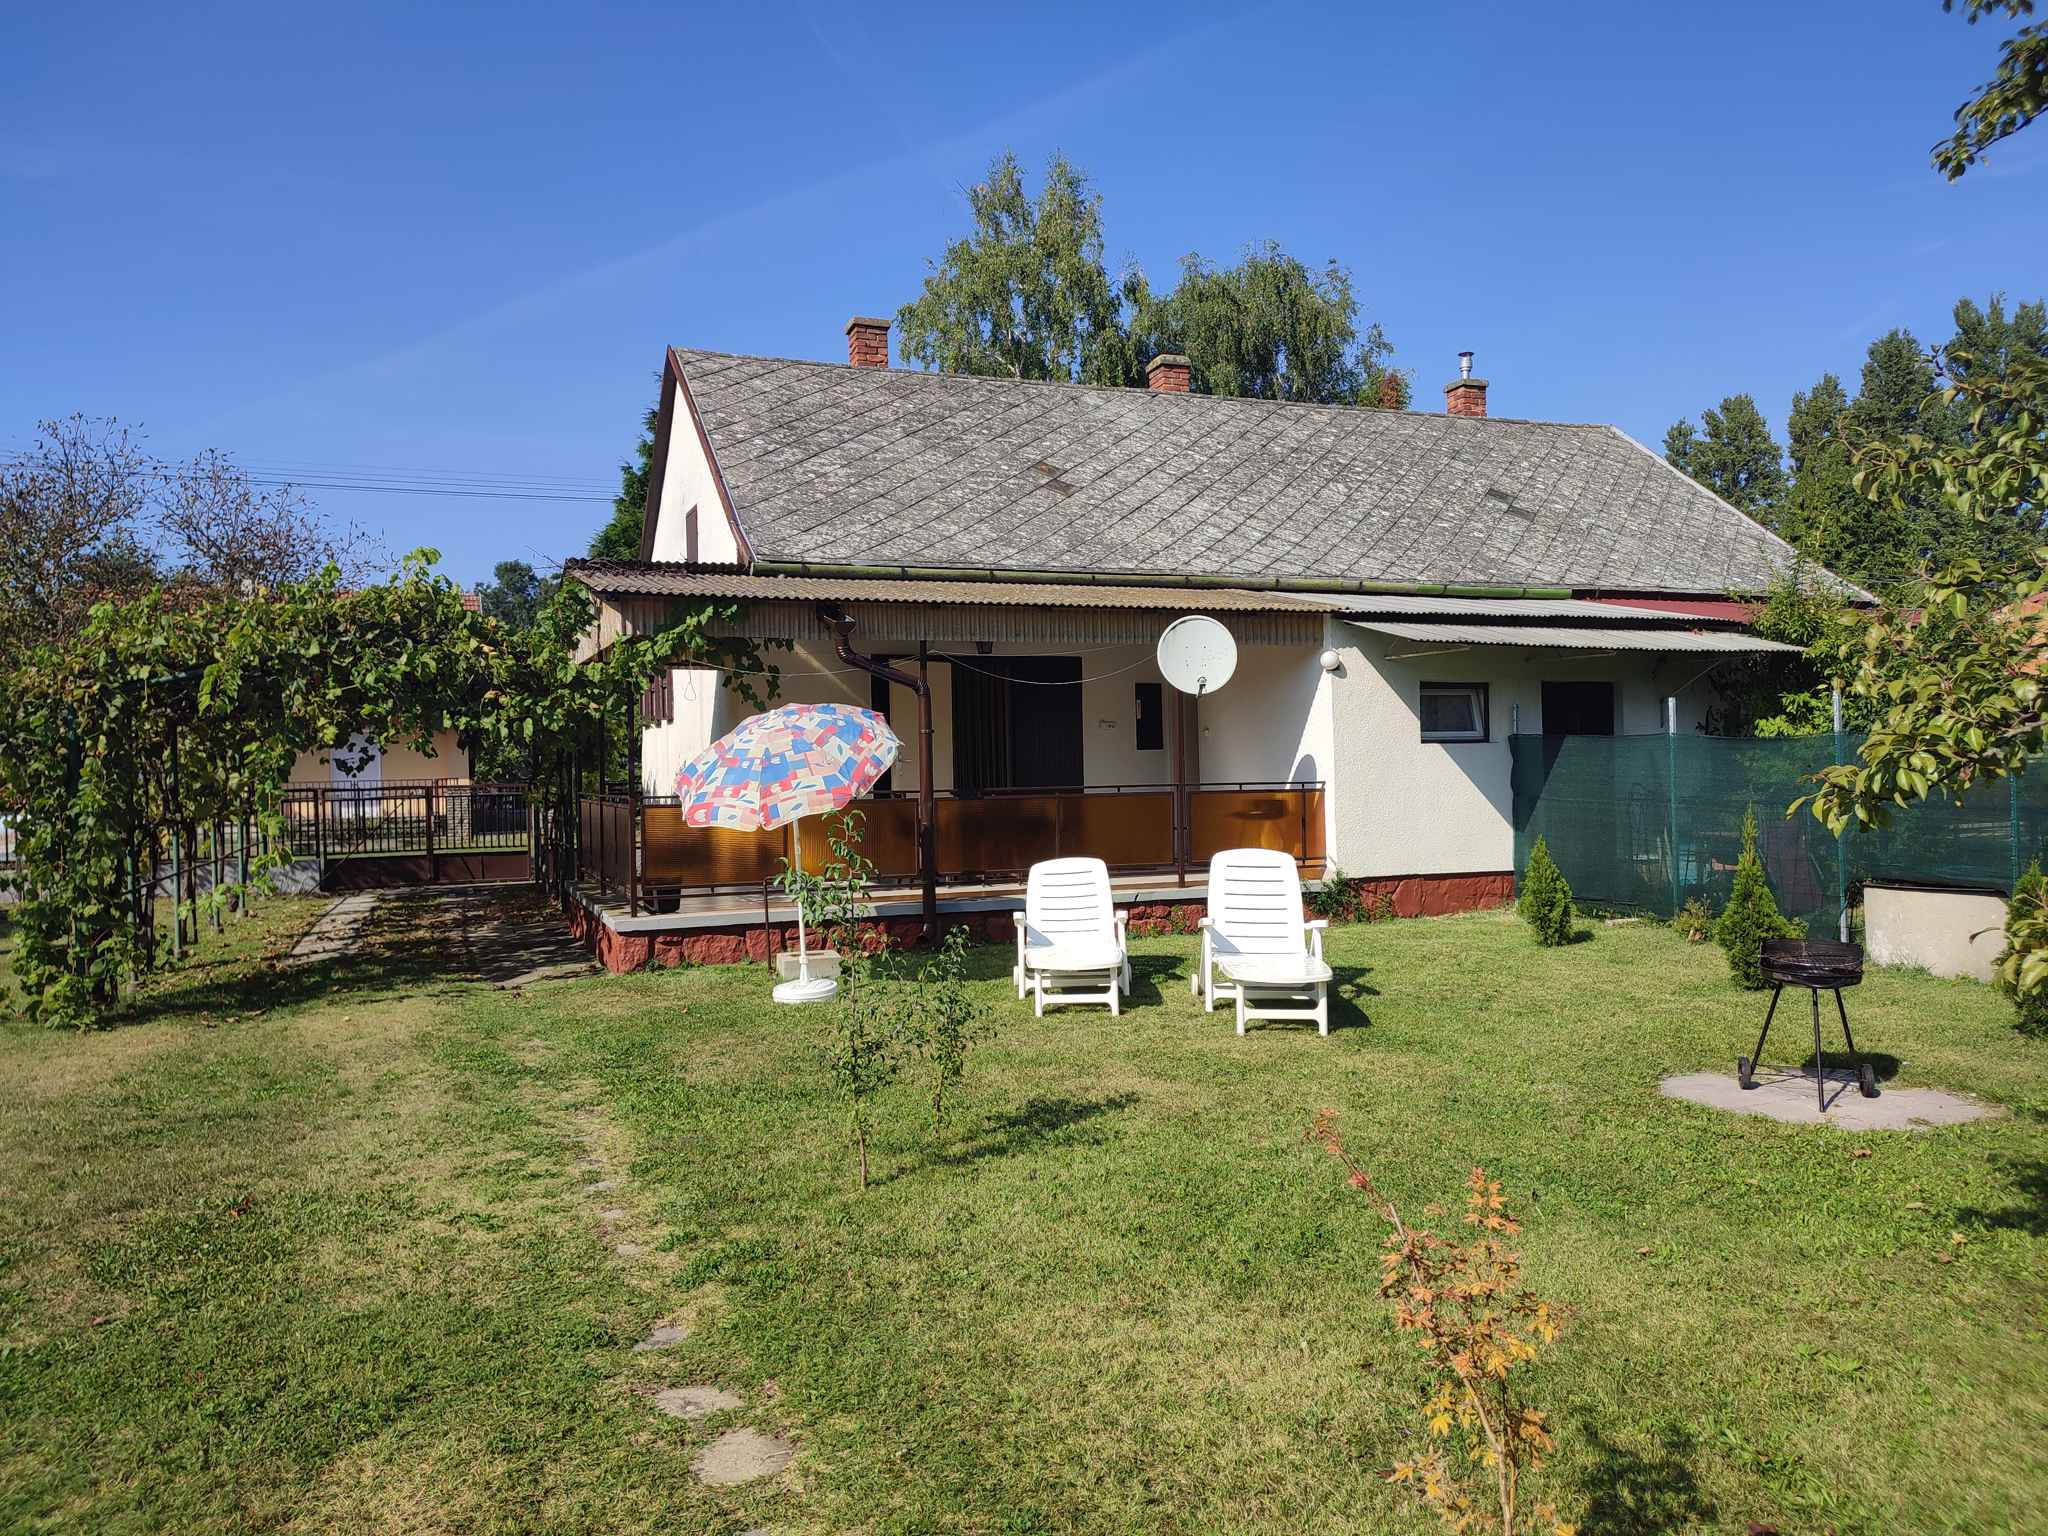 Ferienhaus mit Gartenmöbeln in der Nähe   in Ungarn